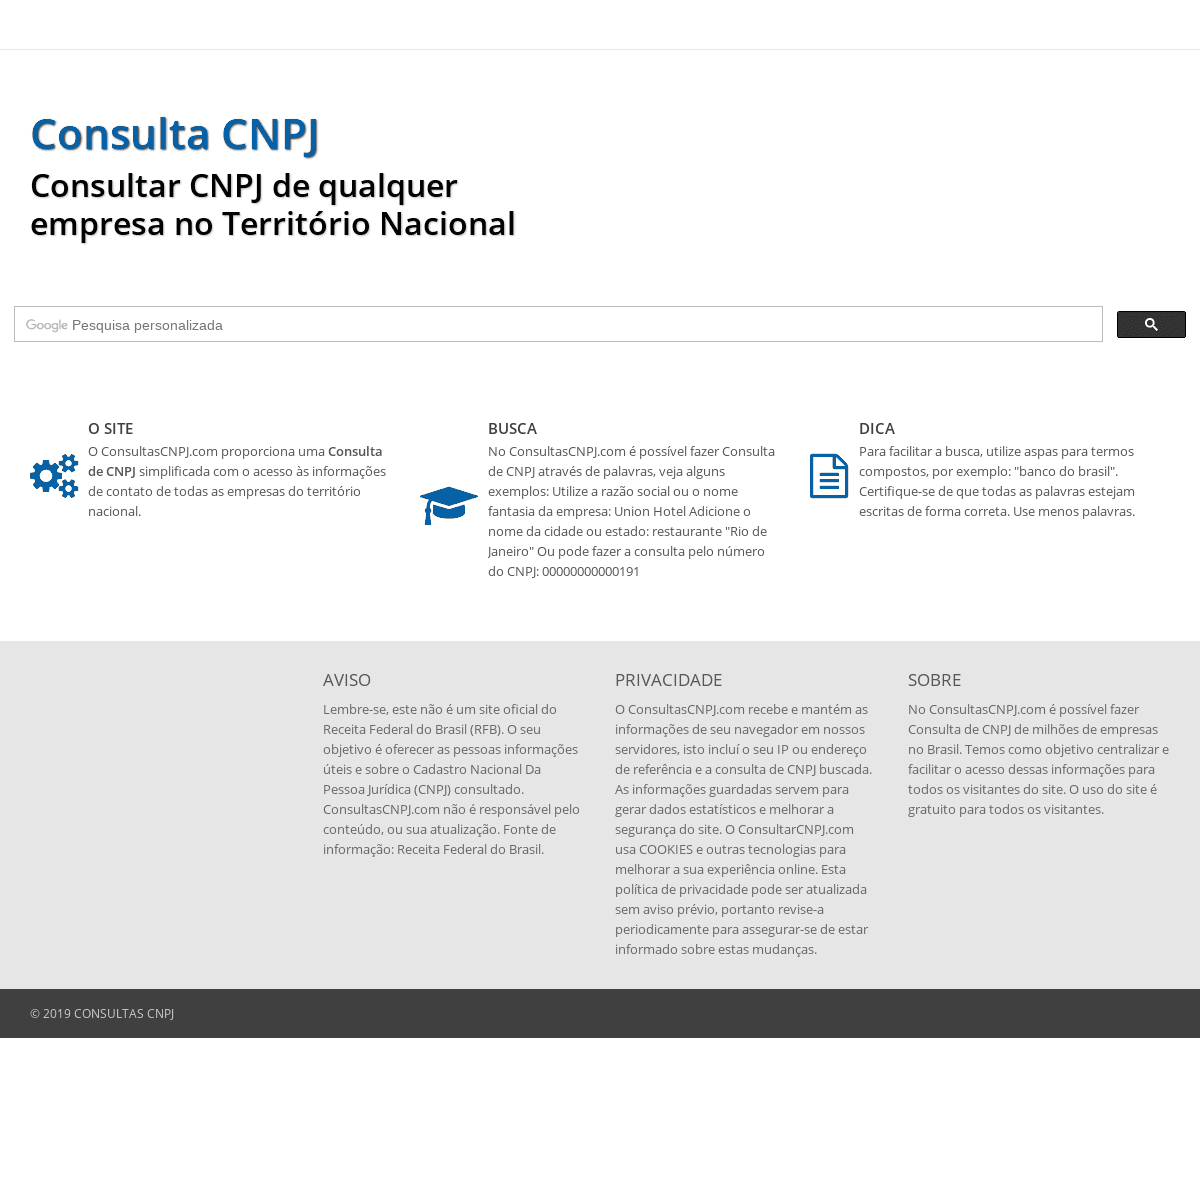 Consulta CNPJ de Empresas no território nacional - Consultas CNPJ